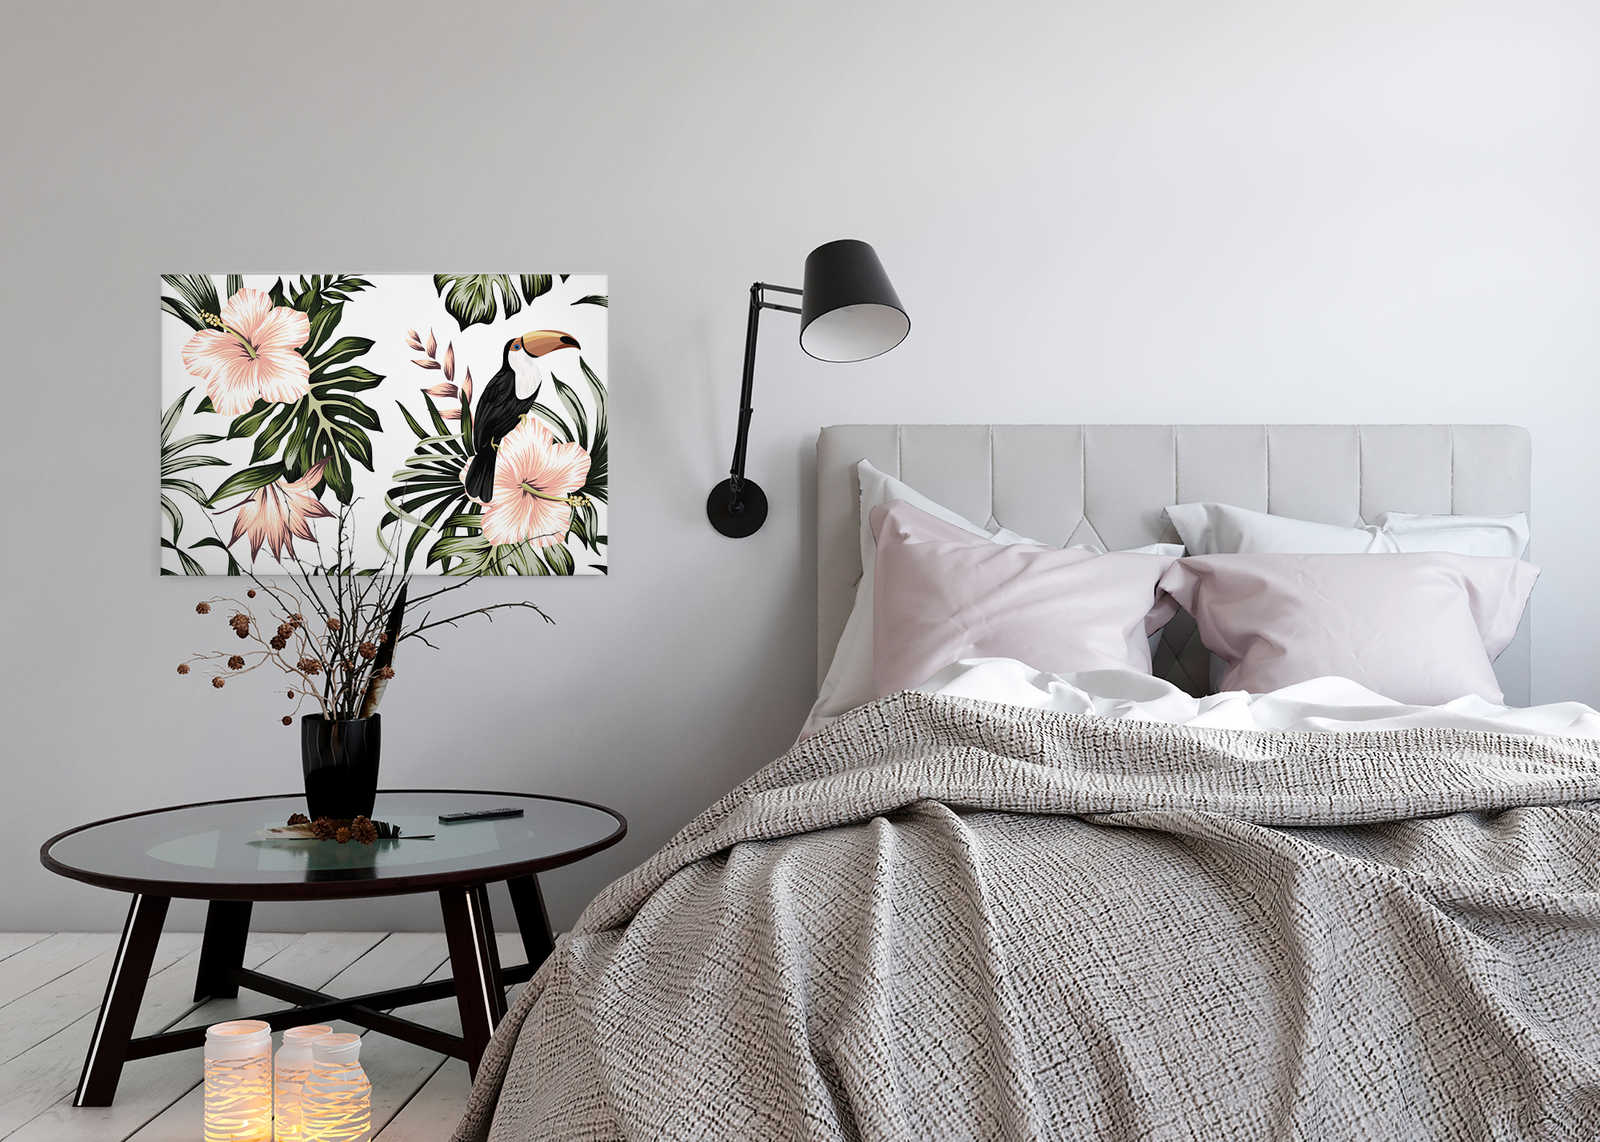             Lienzo con plantas selváticas y pelícano | Blanco, rosa, verde - 0,90 m x 0,60 m
        